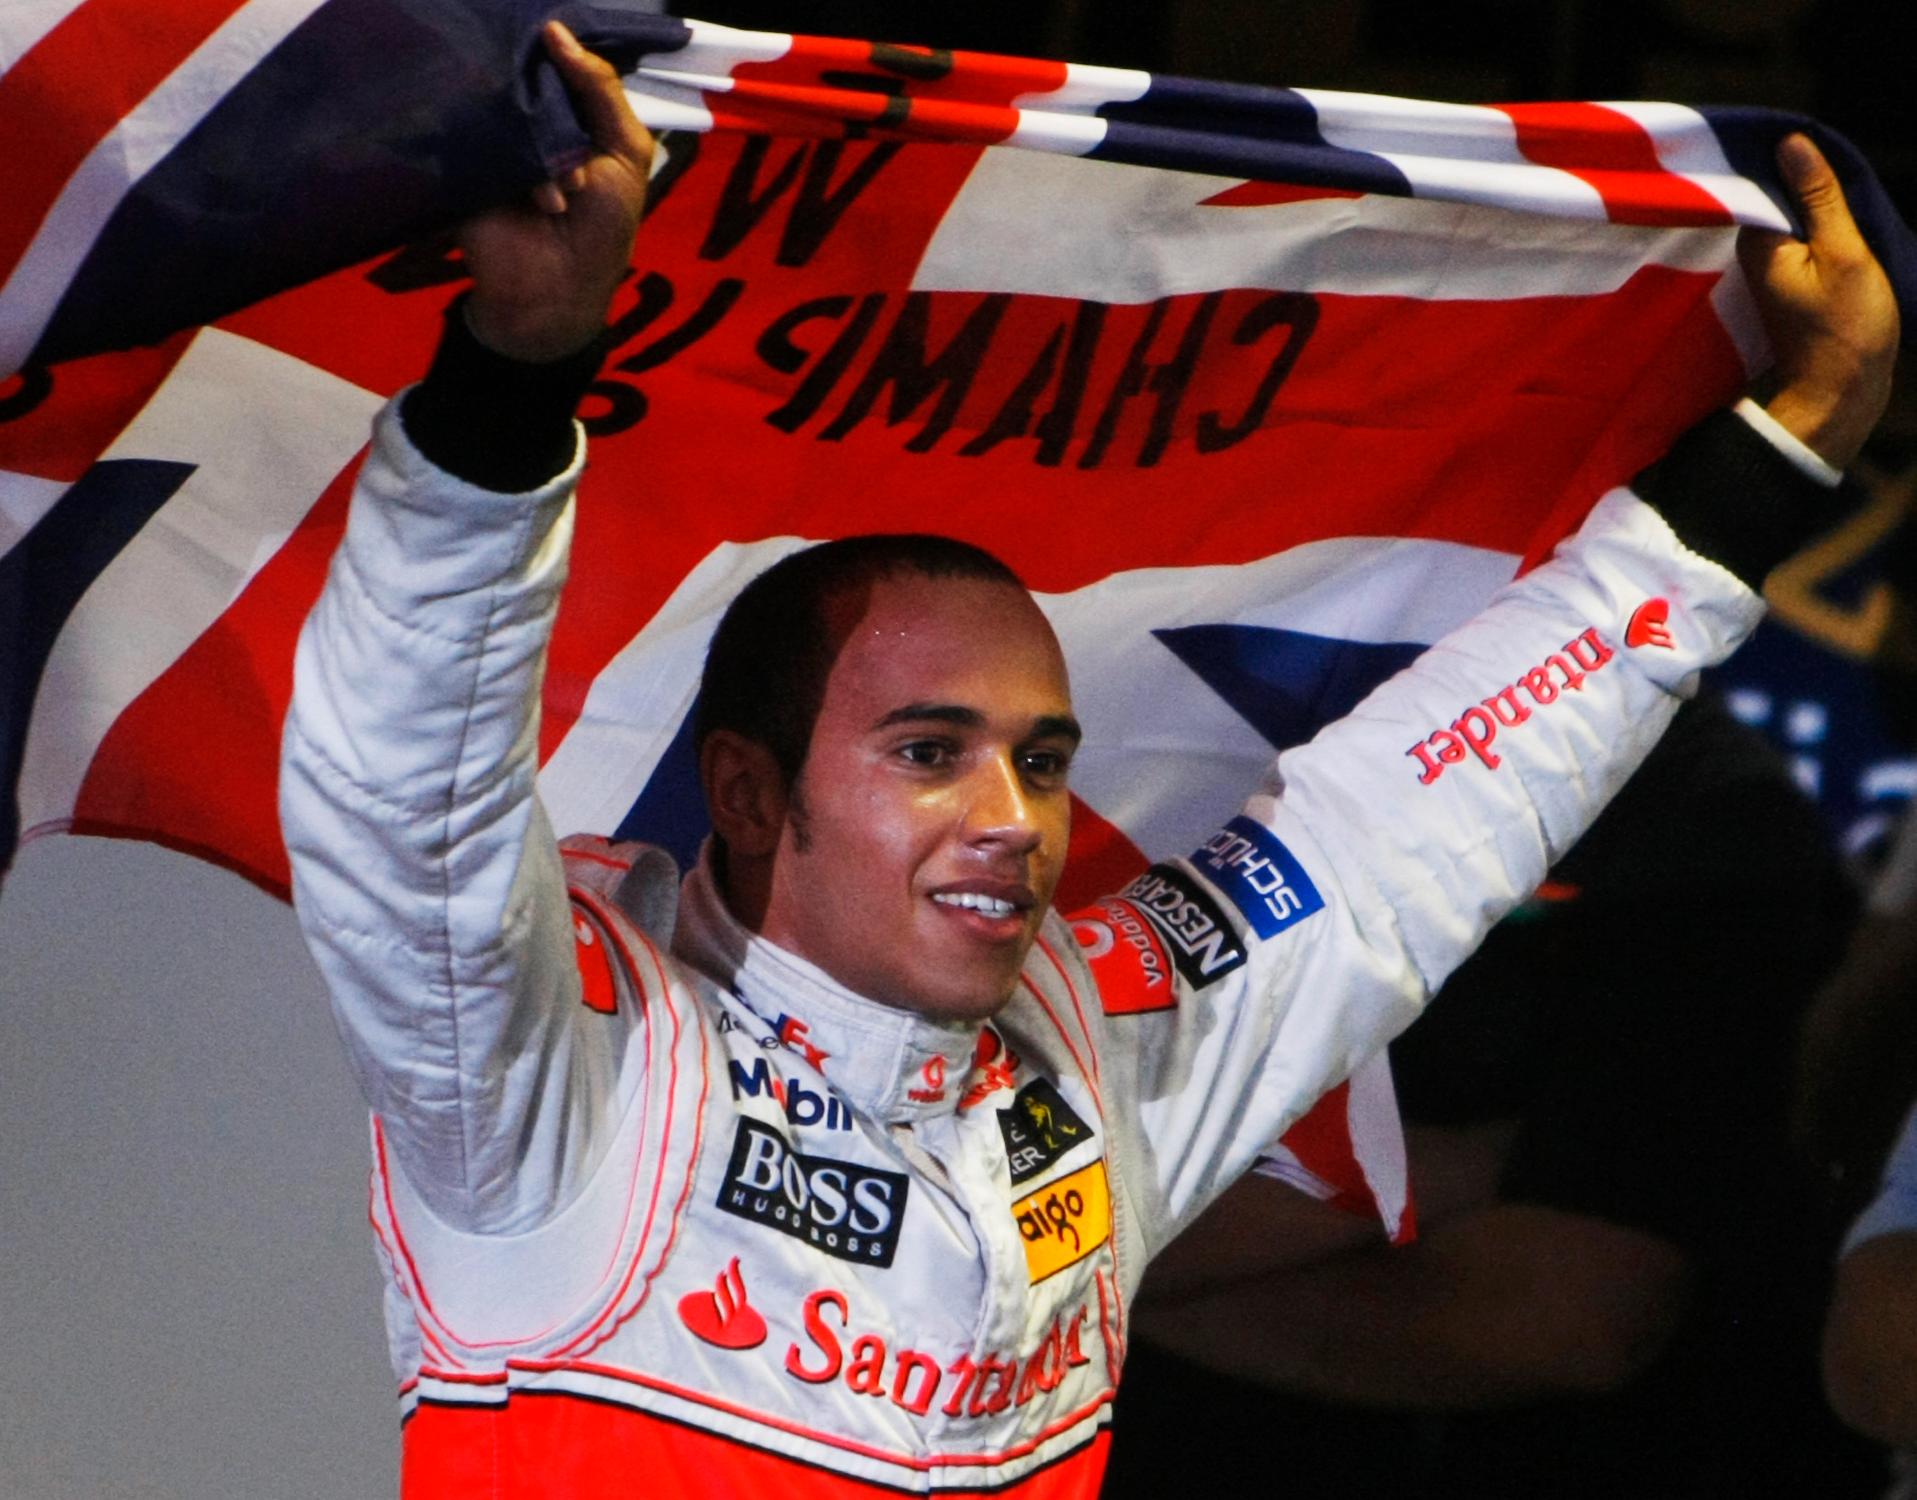 VERDENSMESTER: Lewis Hamilton, som den gang kjørte for McLaren-Mercedes, jubler over at VM-gullet er sikret med 5. plass i avslutningsløpet i Brasil i 2008.